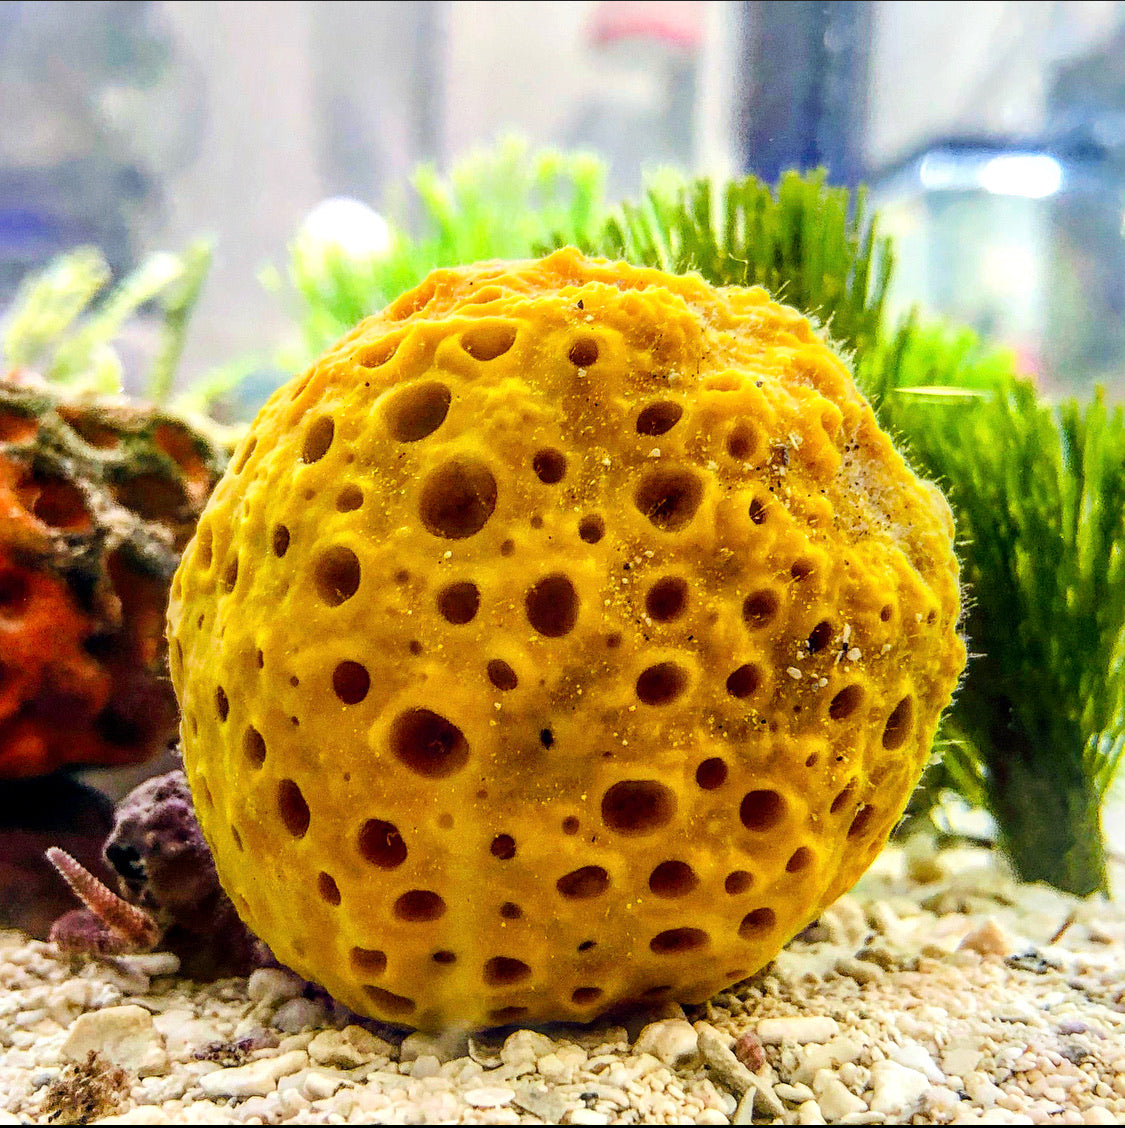 6-7 Yellow Sea Sponge